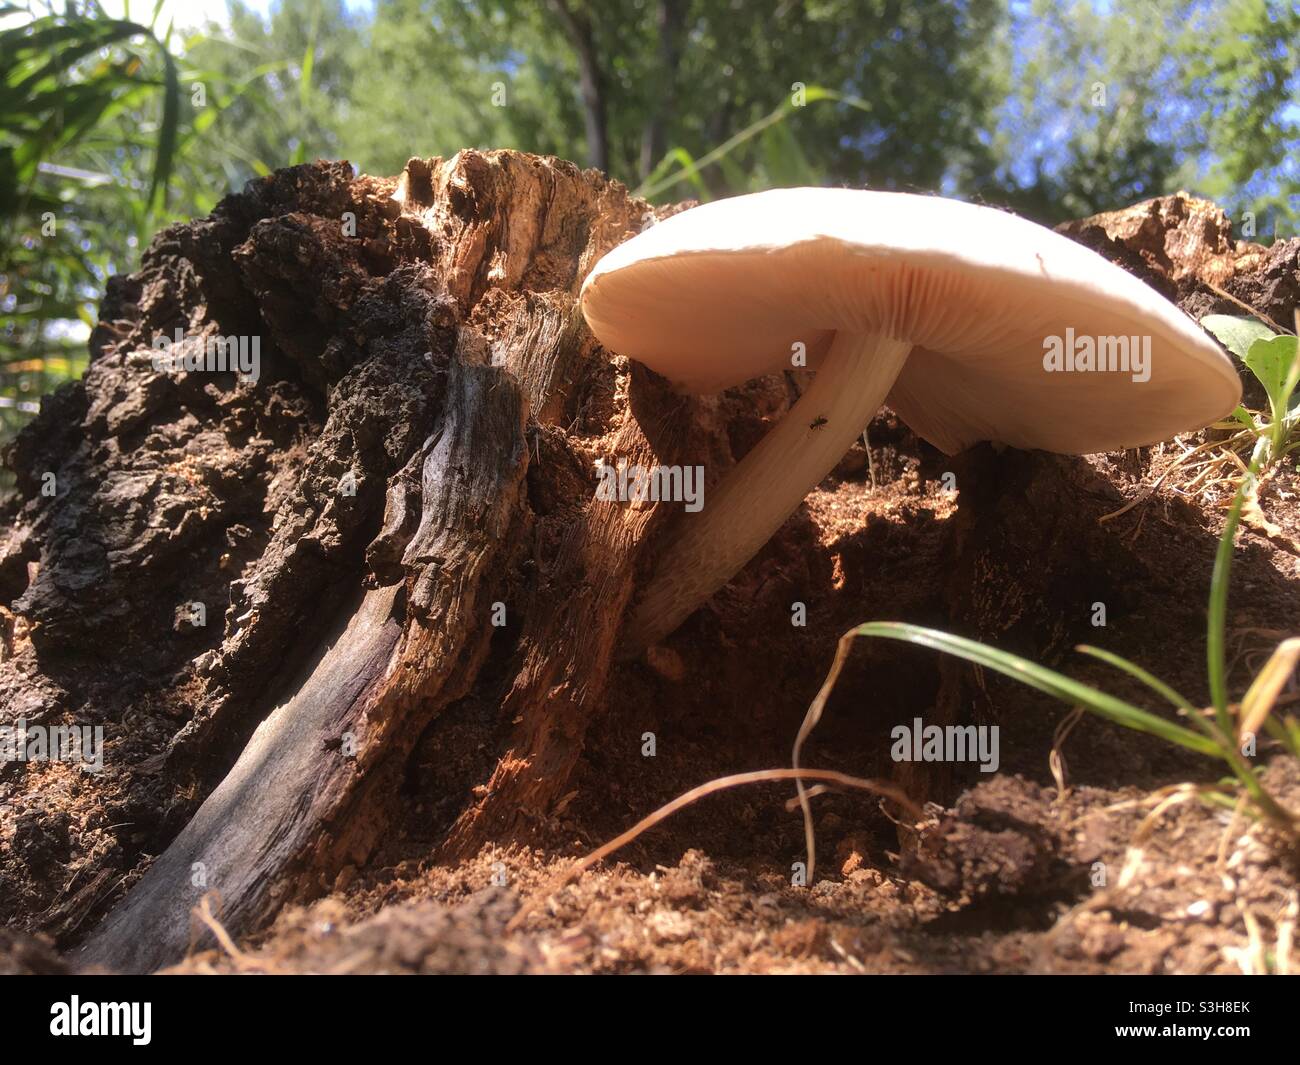 Pluteus pellitus fungus mushroom growing on decaying tree log, Hungary Stock Photo